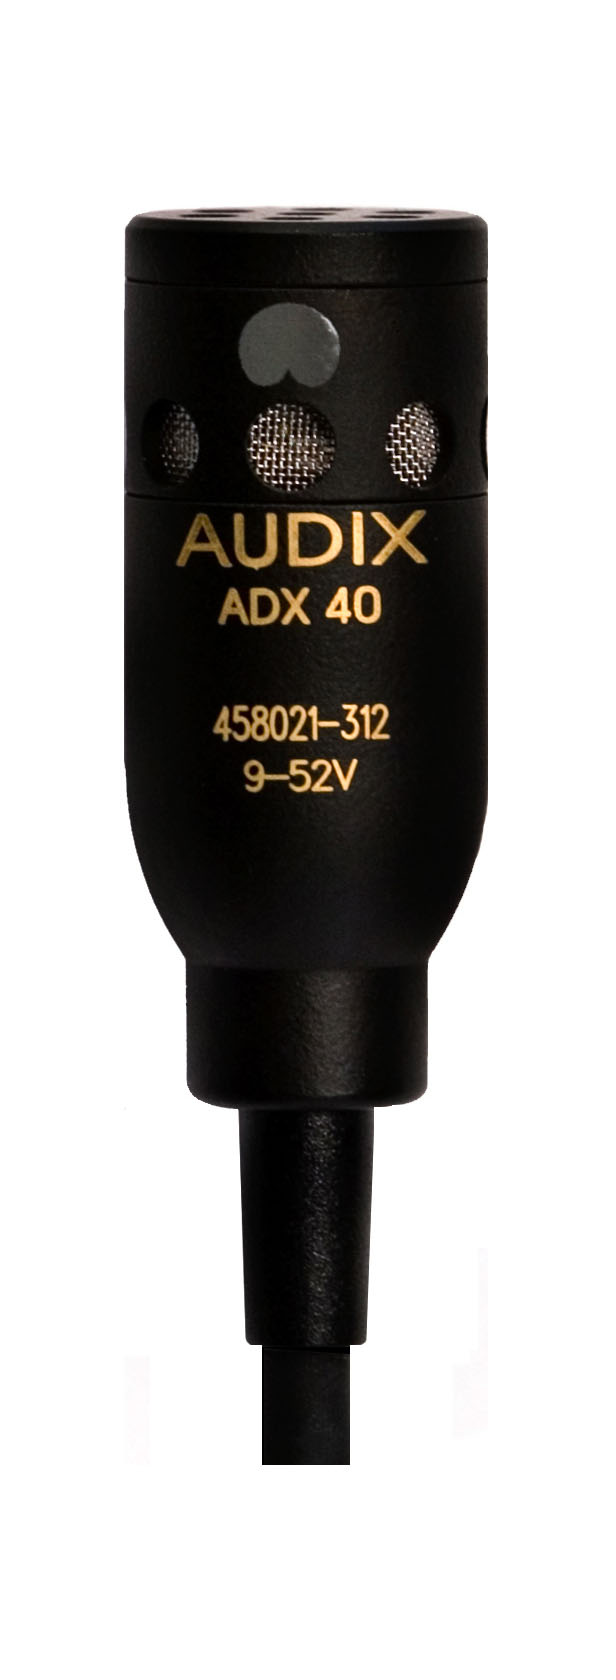 Специальные микрофоны AUDIX ADX40 специальные микрофоны fifine t730